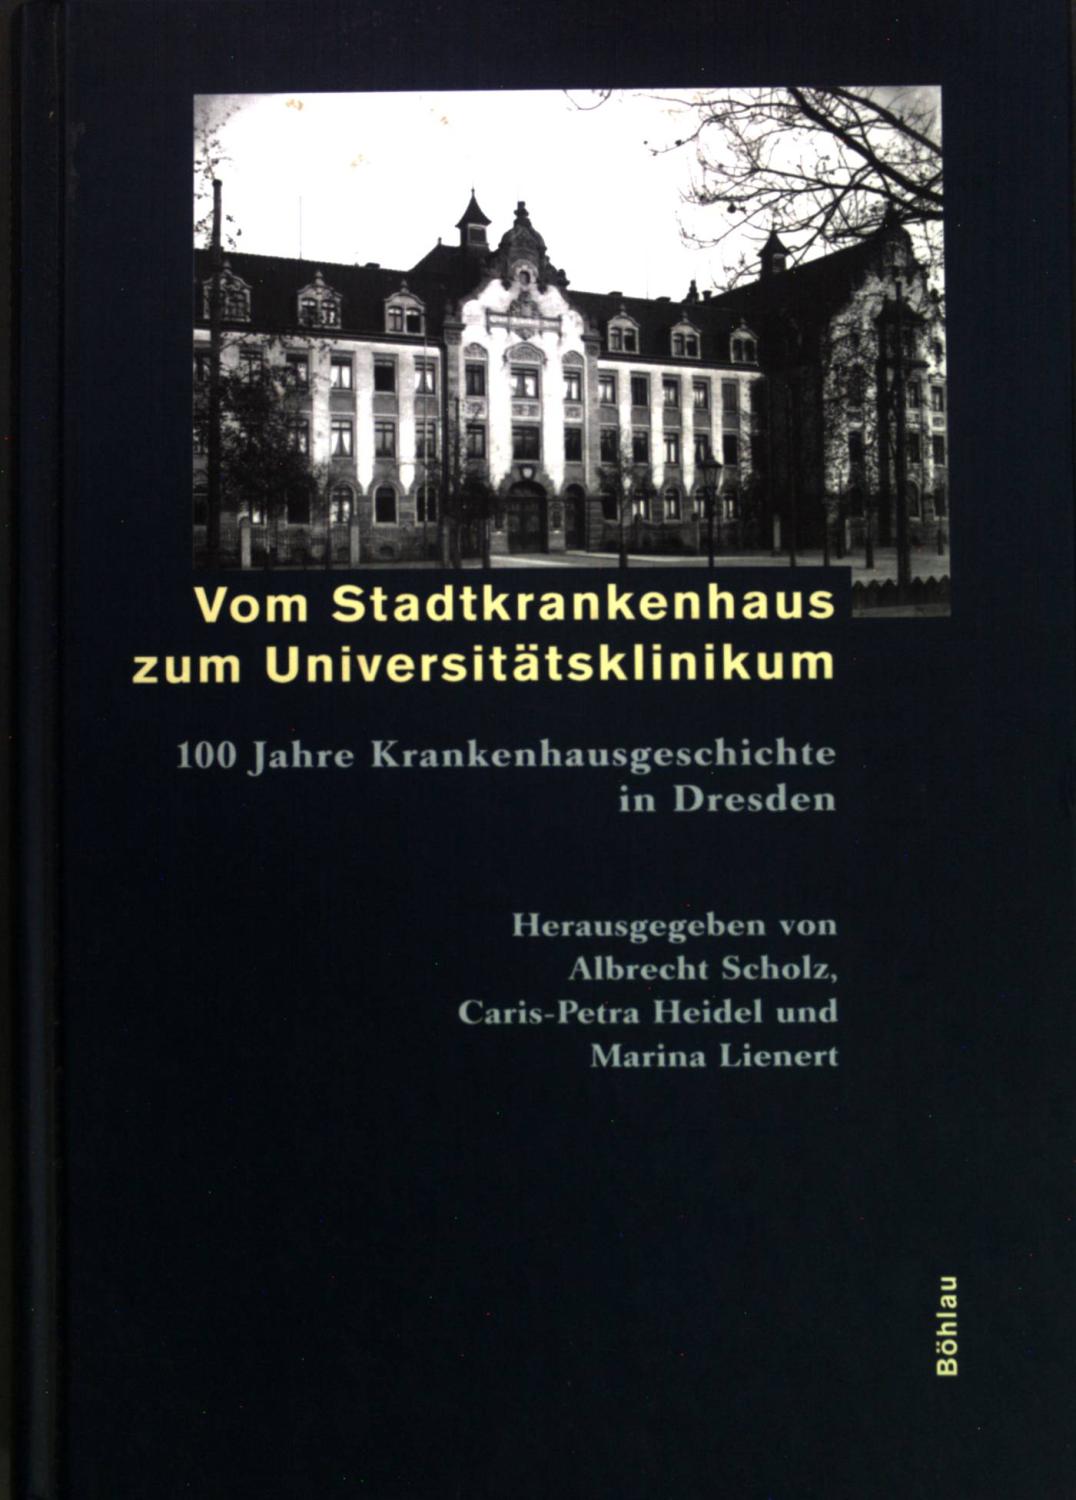 Vom Stadtkrankenhaus zum Universitätsklinikum. 100 Jahre Krankenhausgeschichte in Dresden